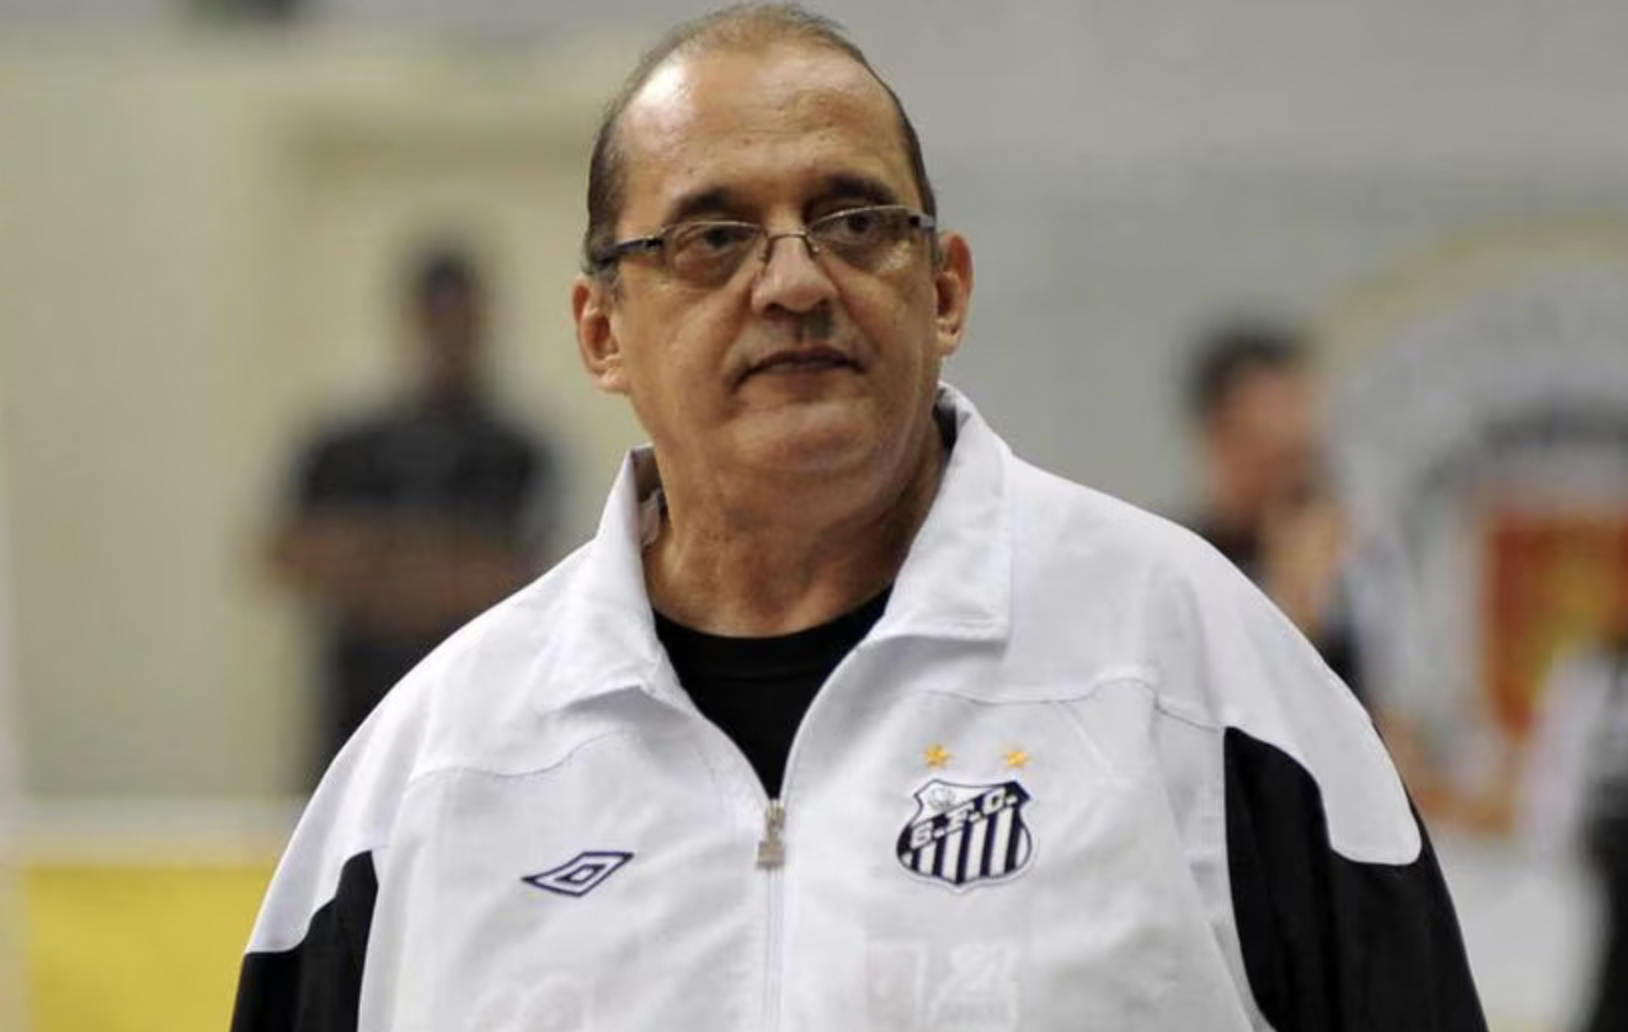 Luto! Fernando Ferretti, técnico multicampeão do futsal, morre aos 69 anos